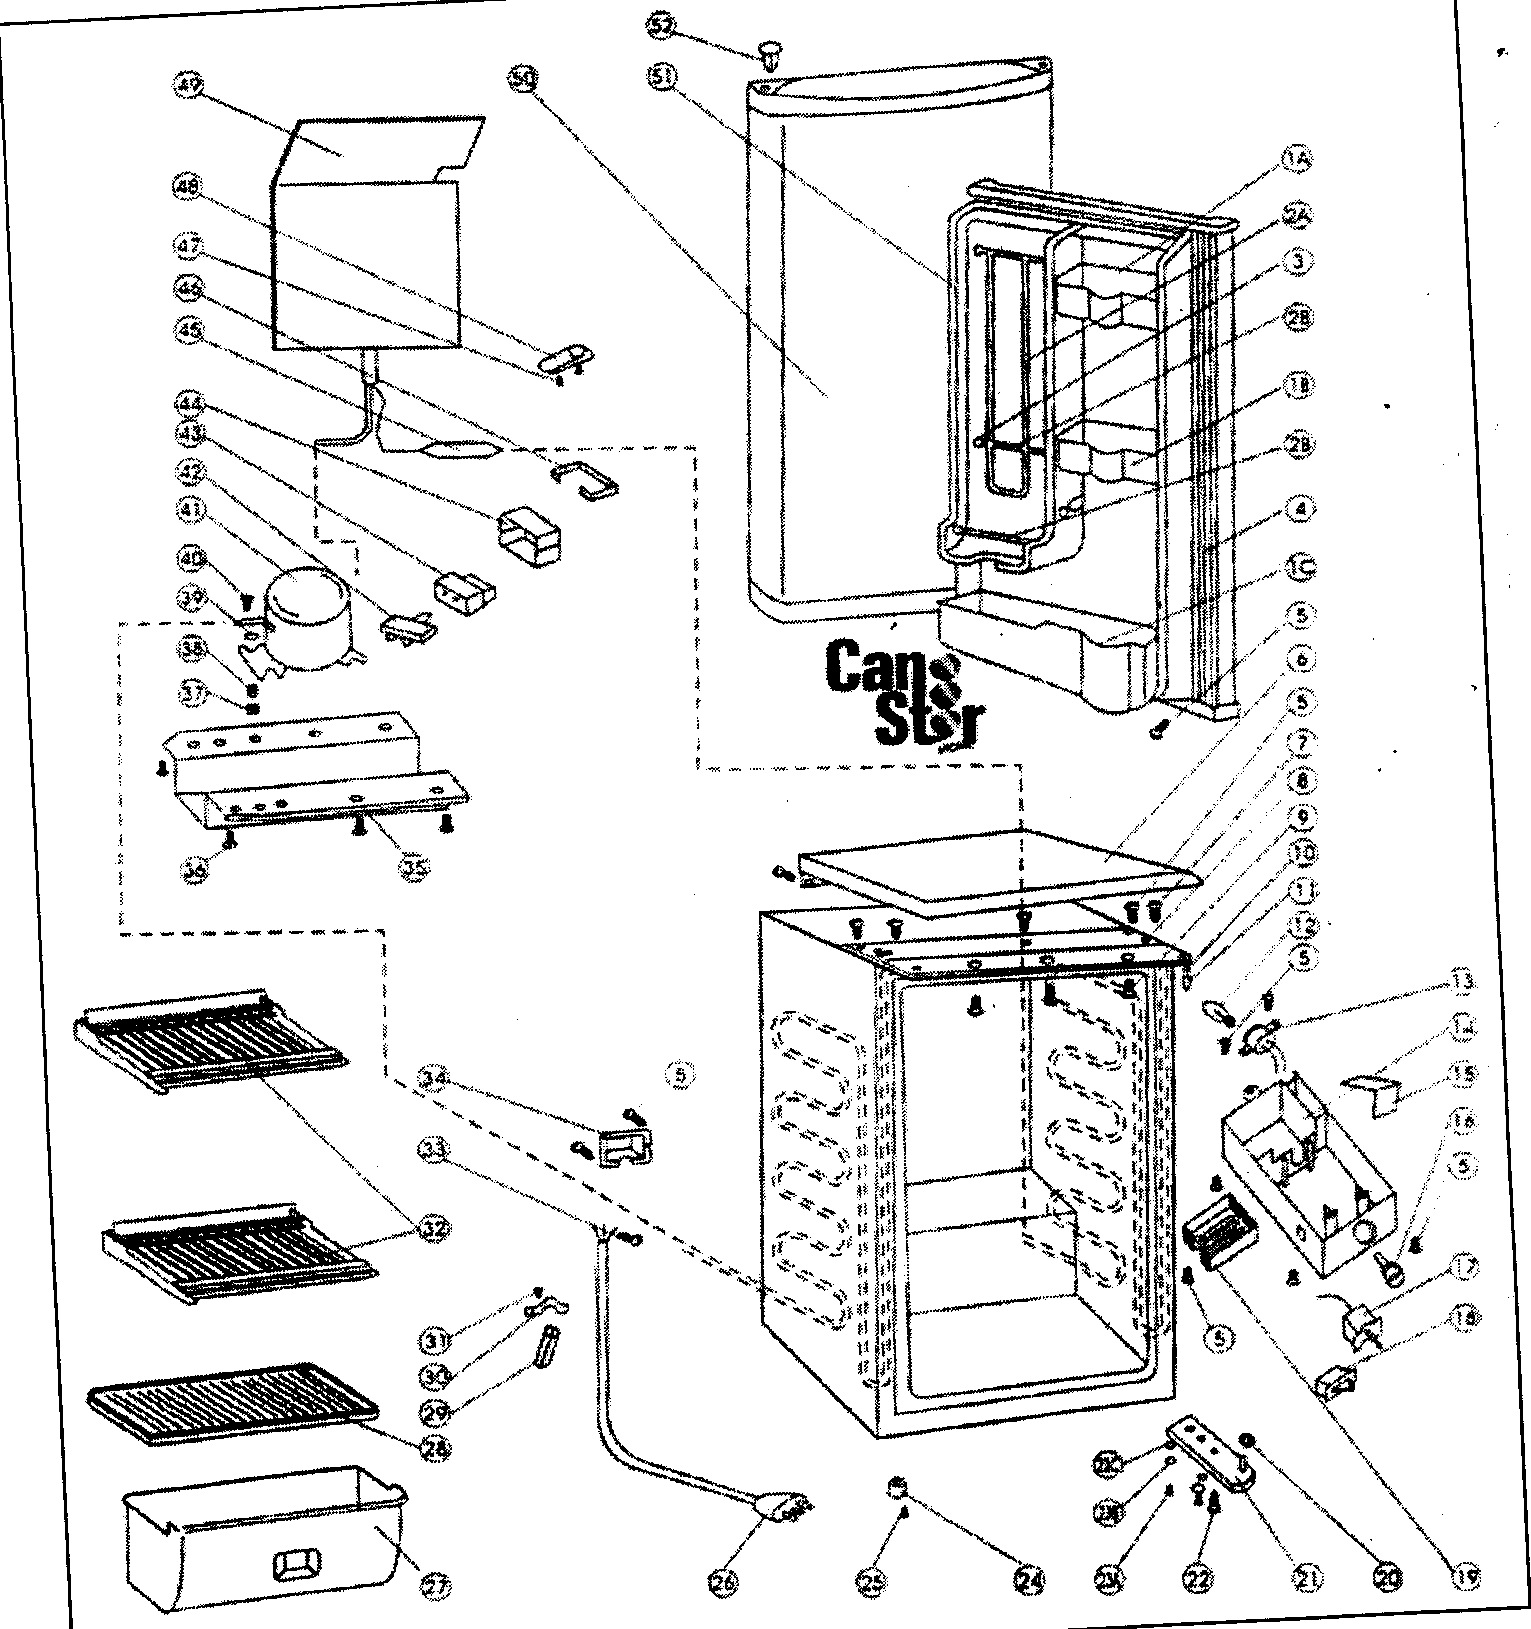 Wiring Diagram For A Refrigerator Compressor